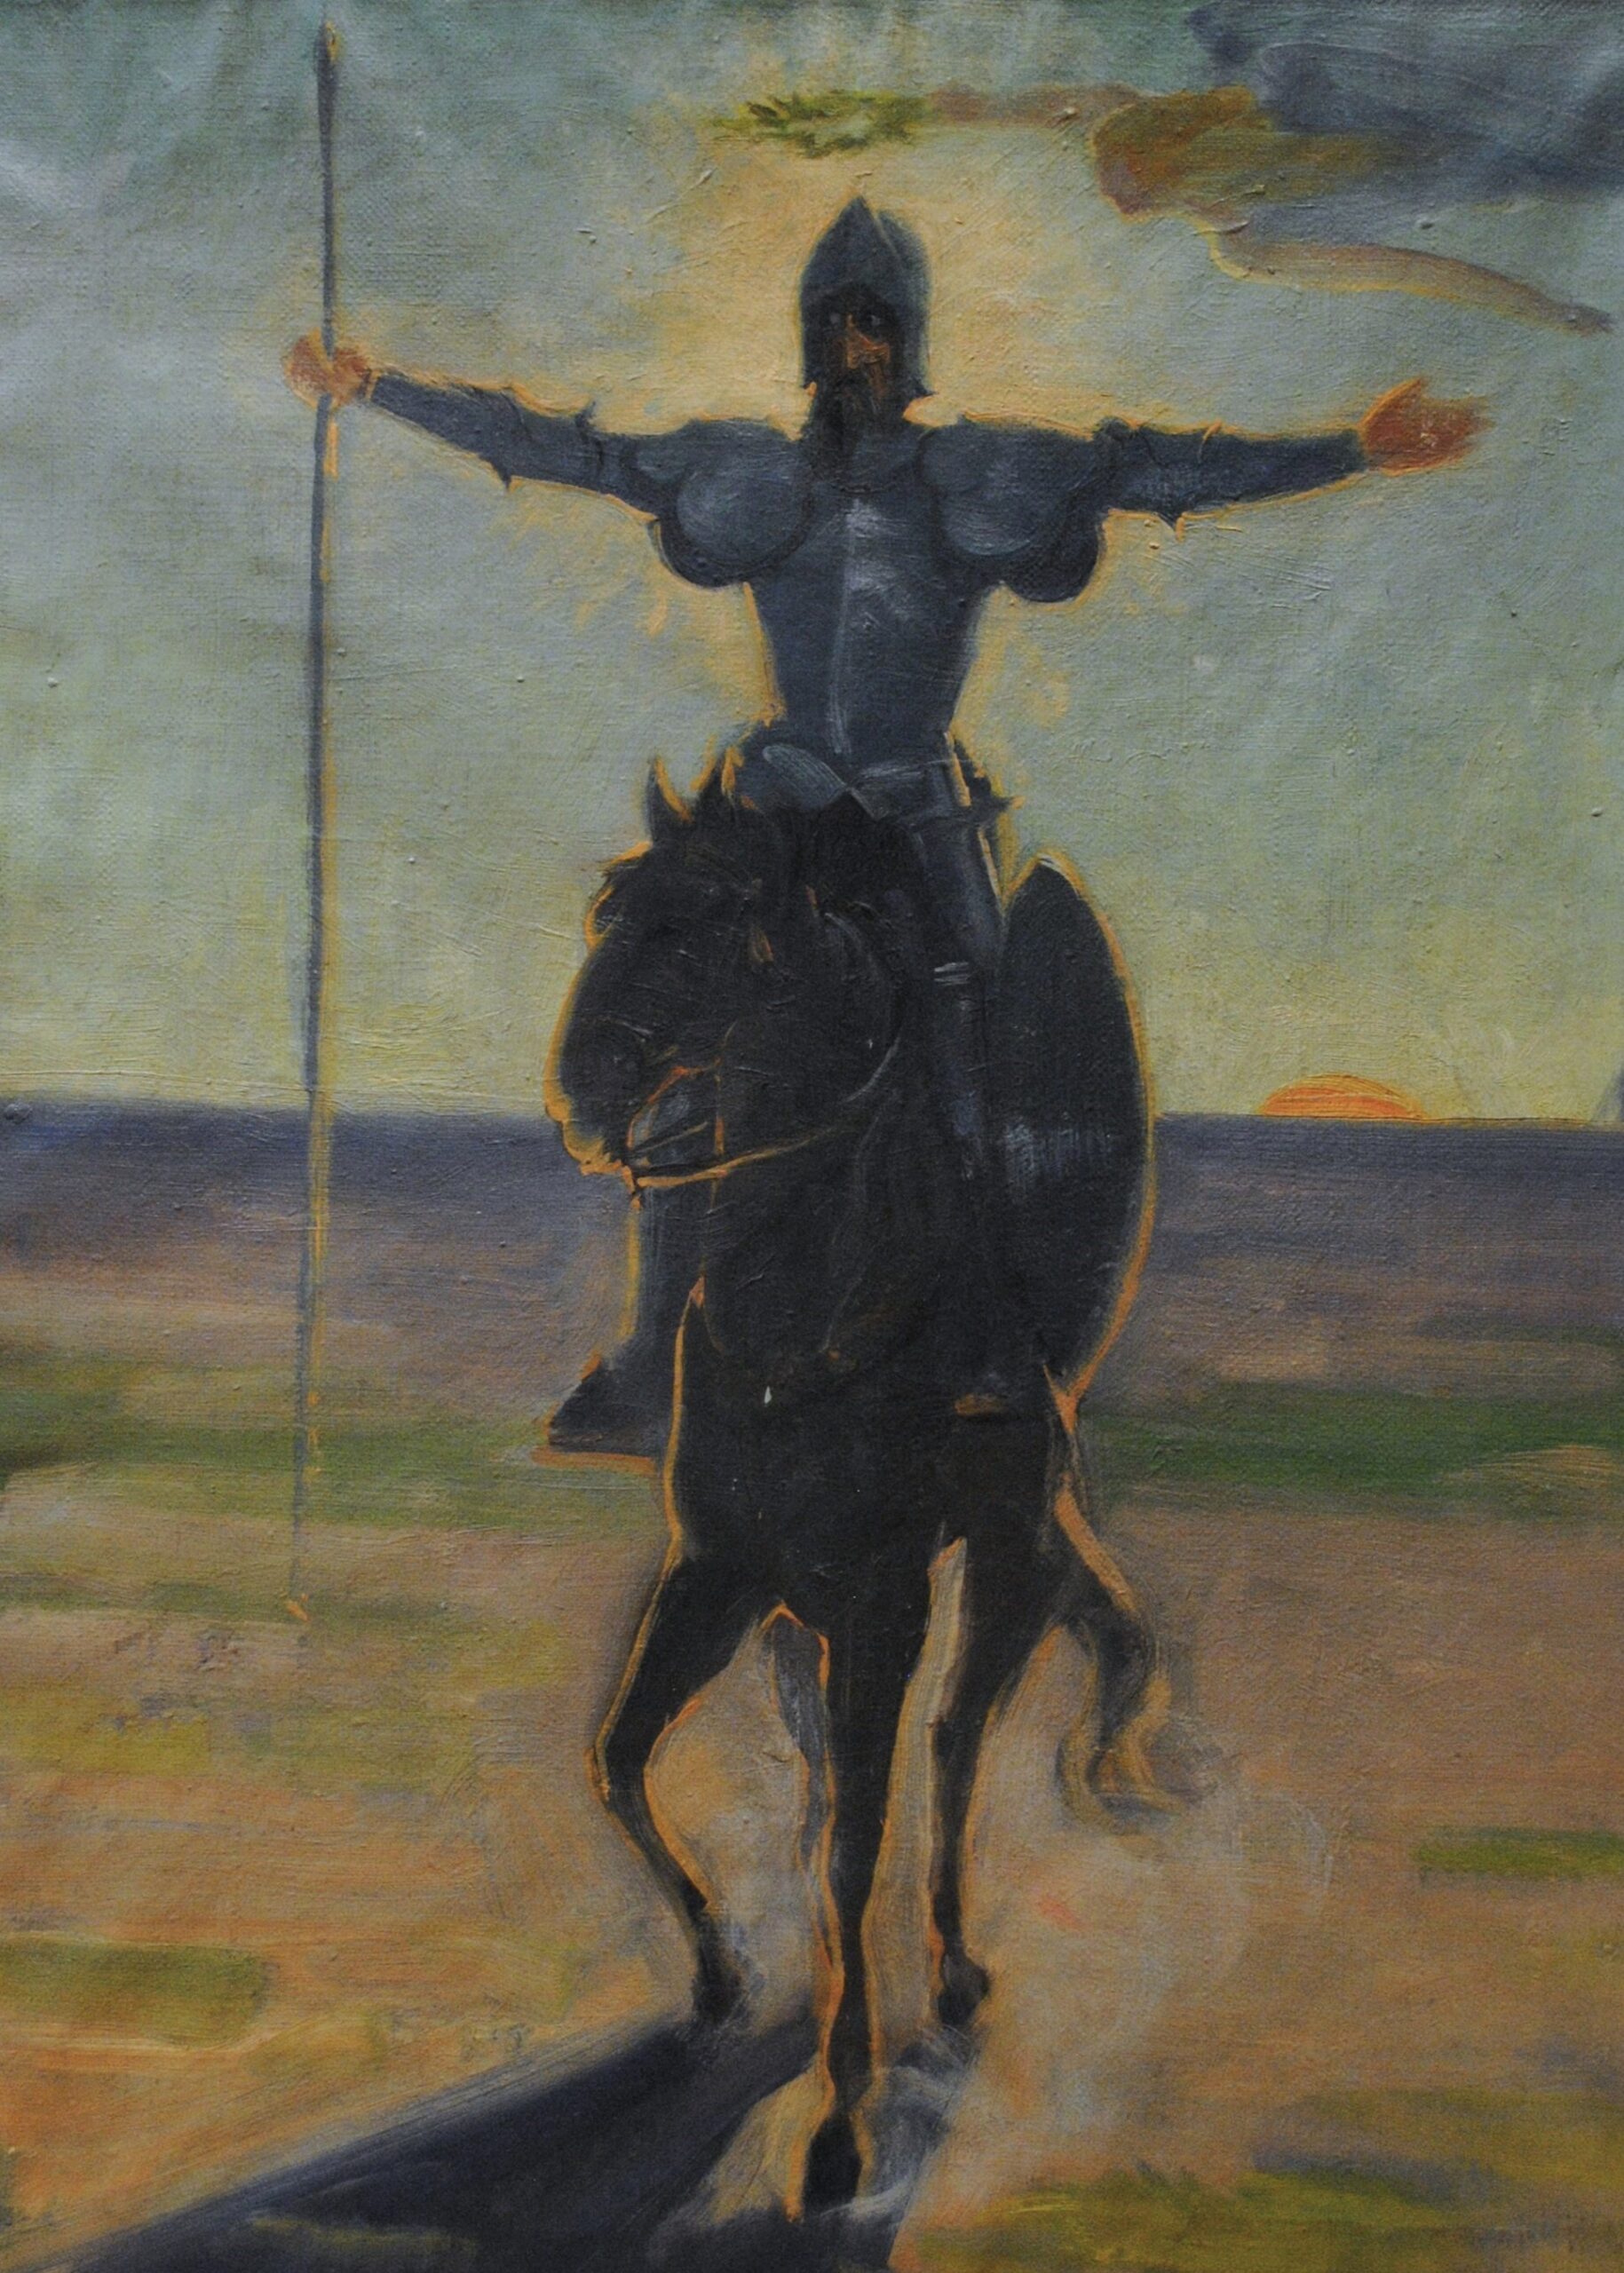 Pintura de José Manaut titulada Don Quijote. Óleo sobre lienzo.